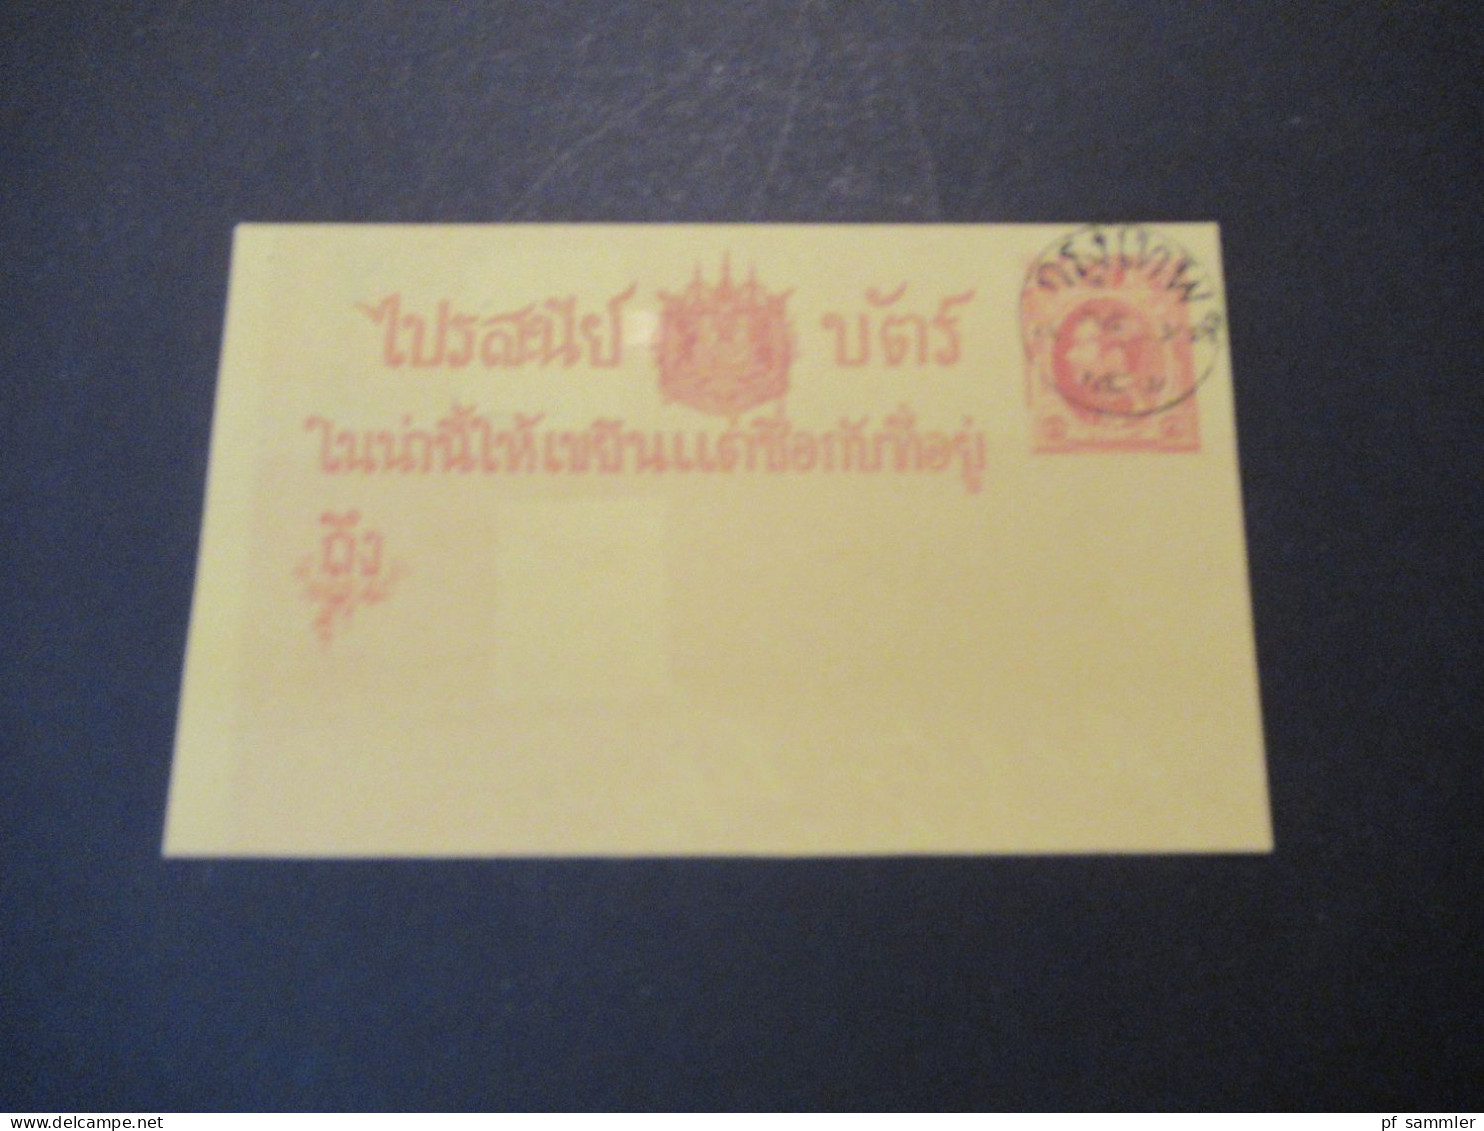 Asien Siam Thailand Ganzsache / Stationary Siam Postage Um 1890 Mit Stempel / Nicht Echt Gelaufen - Thailand